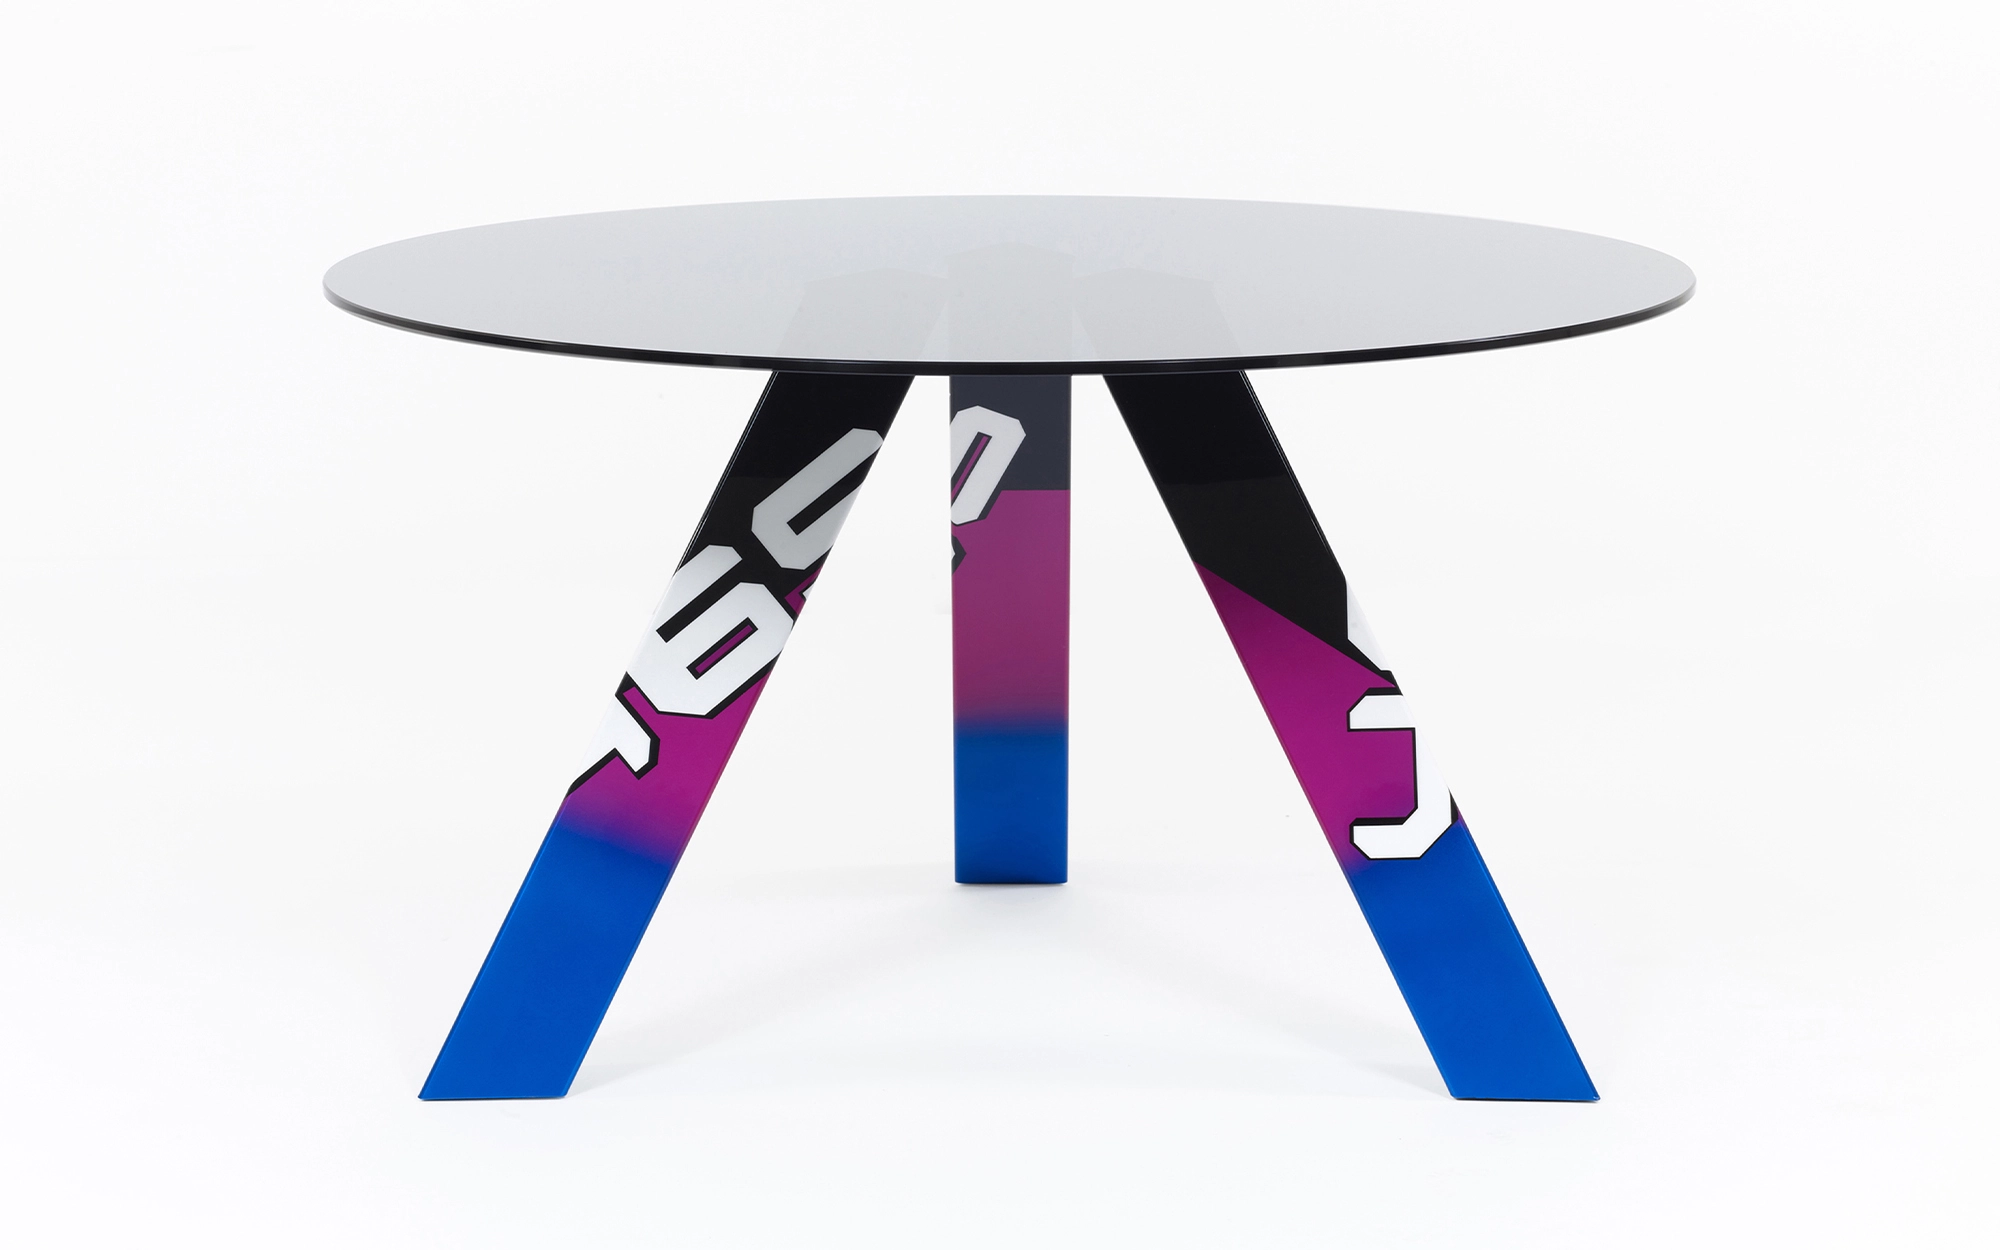 465 Table - Konstantin Grcic - Floor light - Galerie kreo